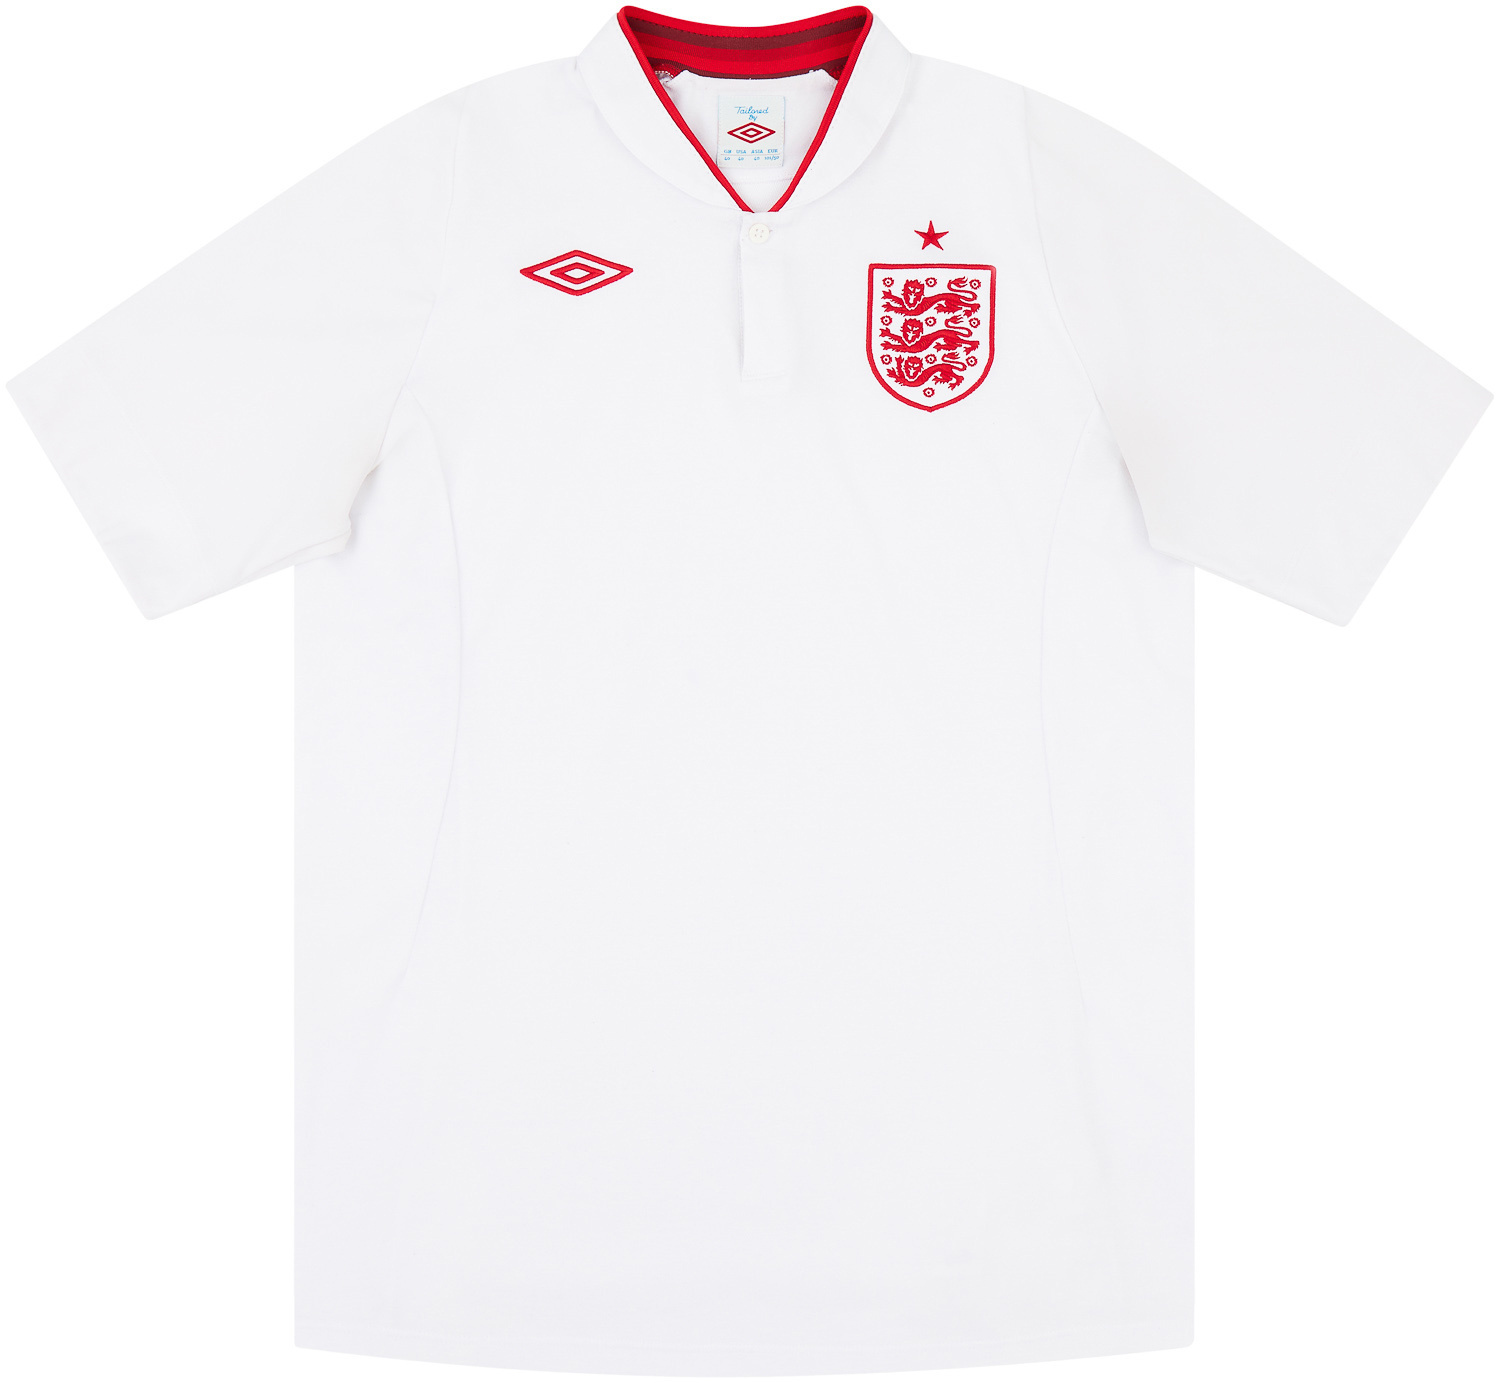 2012-13 England Home Shirt - 8/10 -